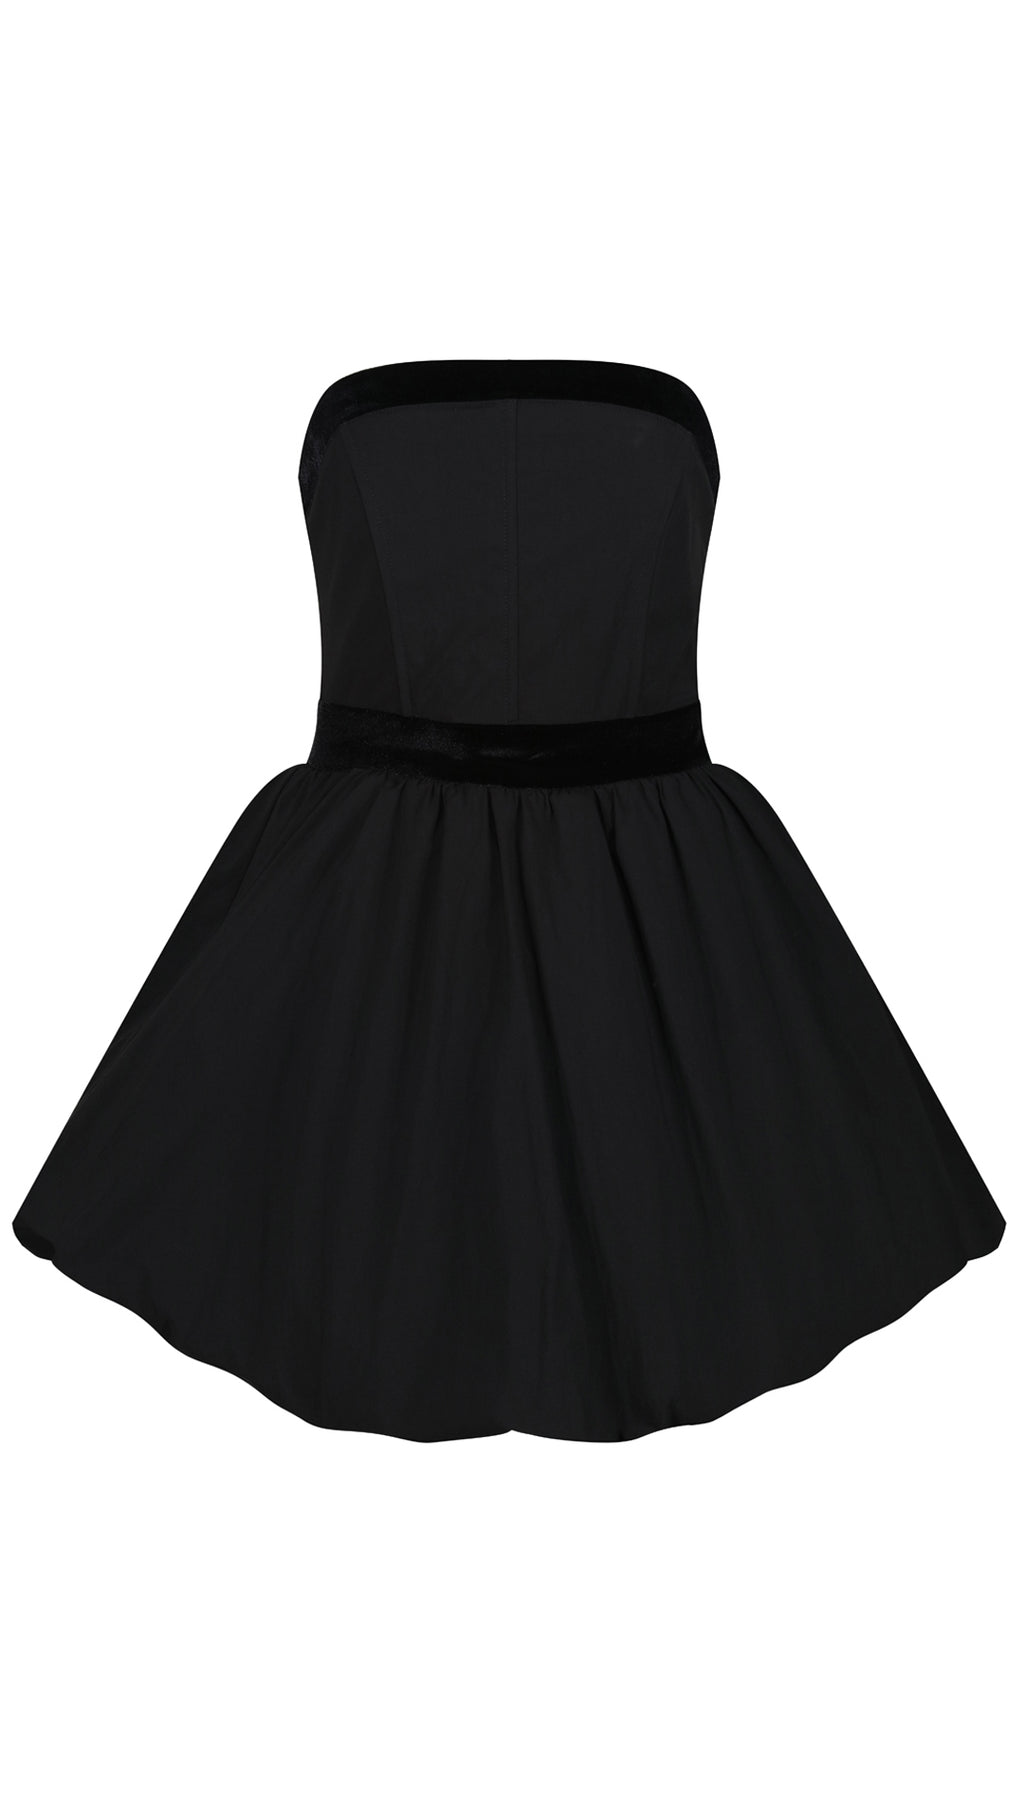 Opium Black Corseted Puffed Skirt Dress